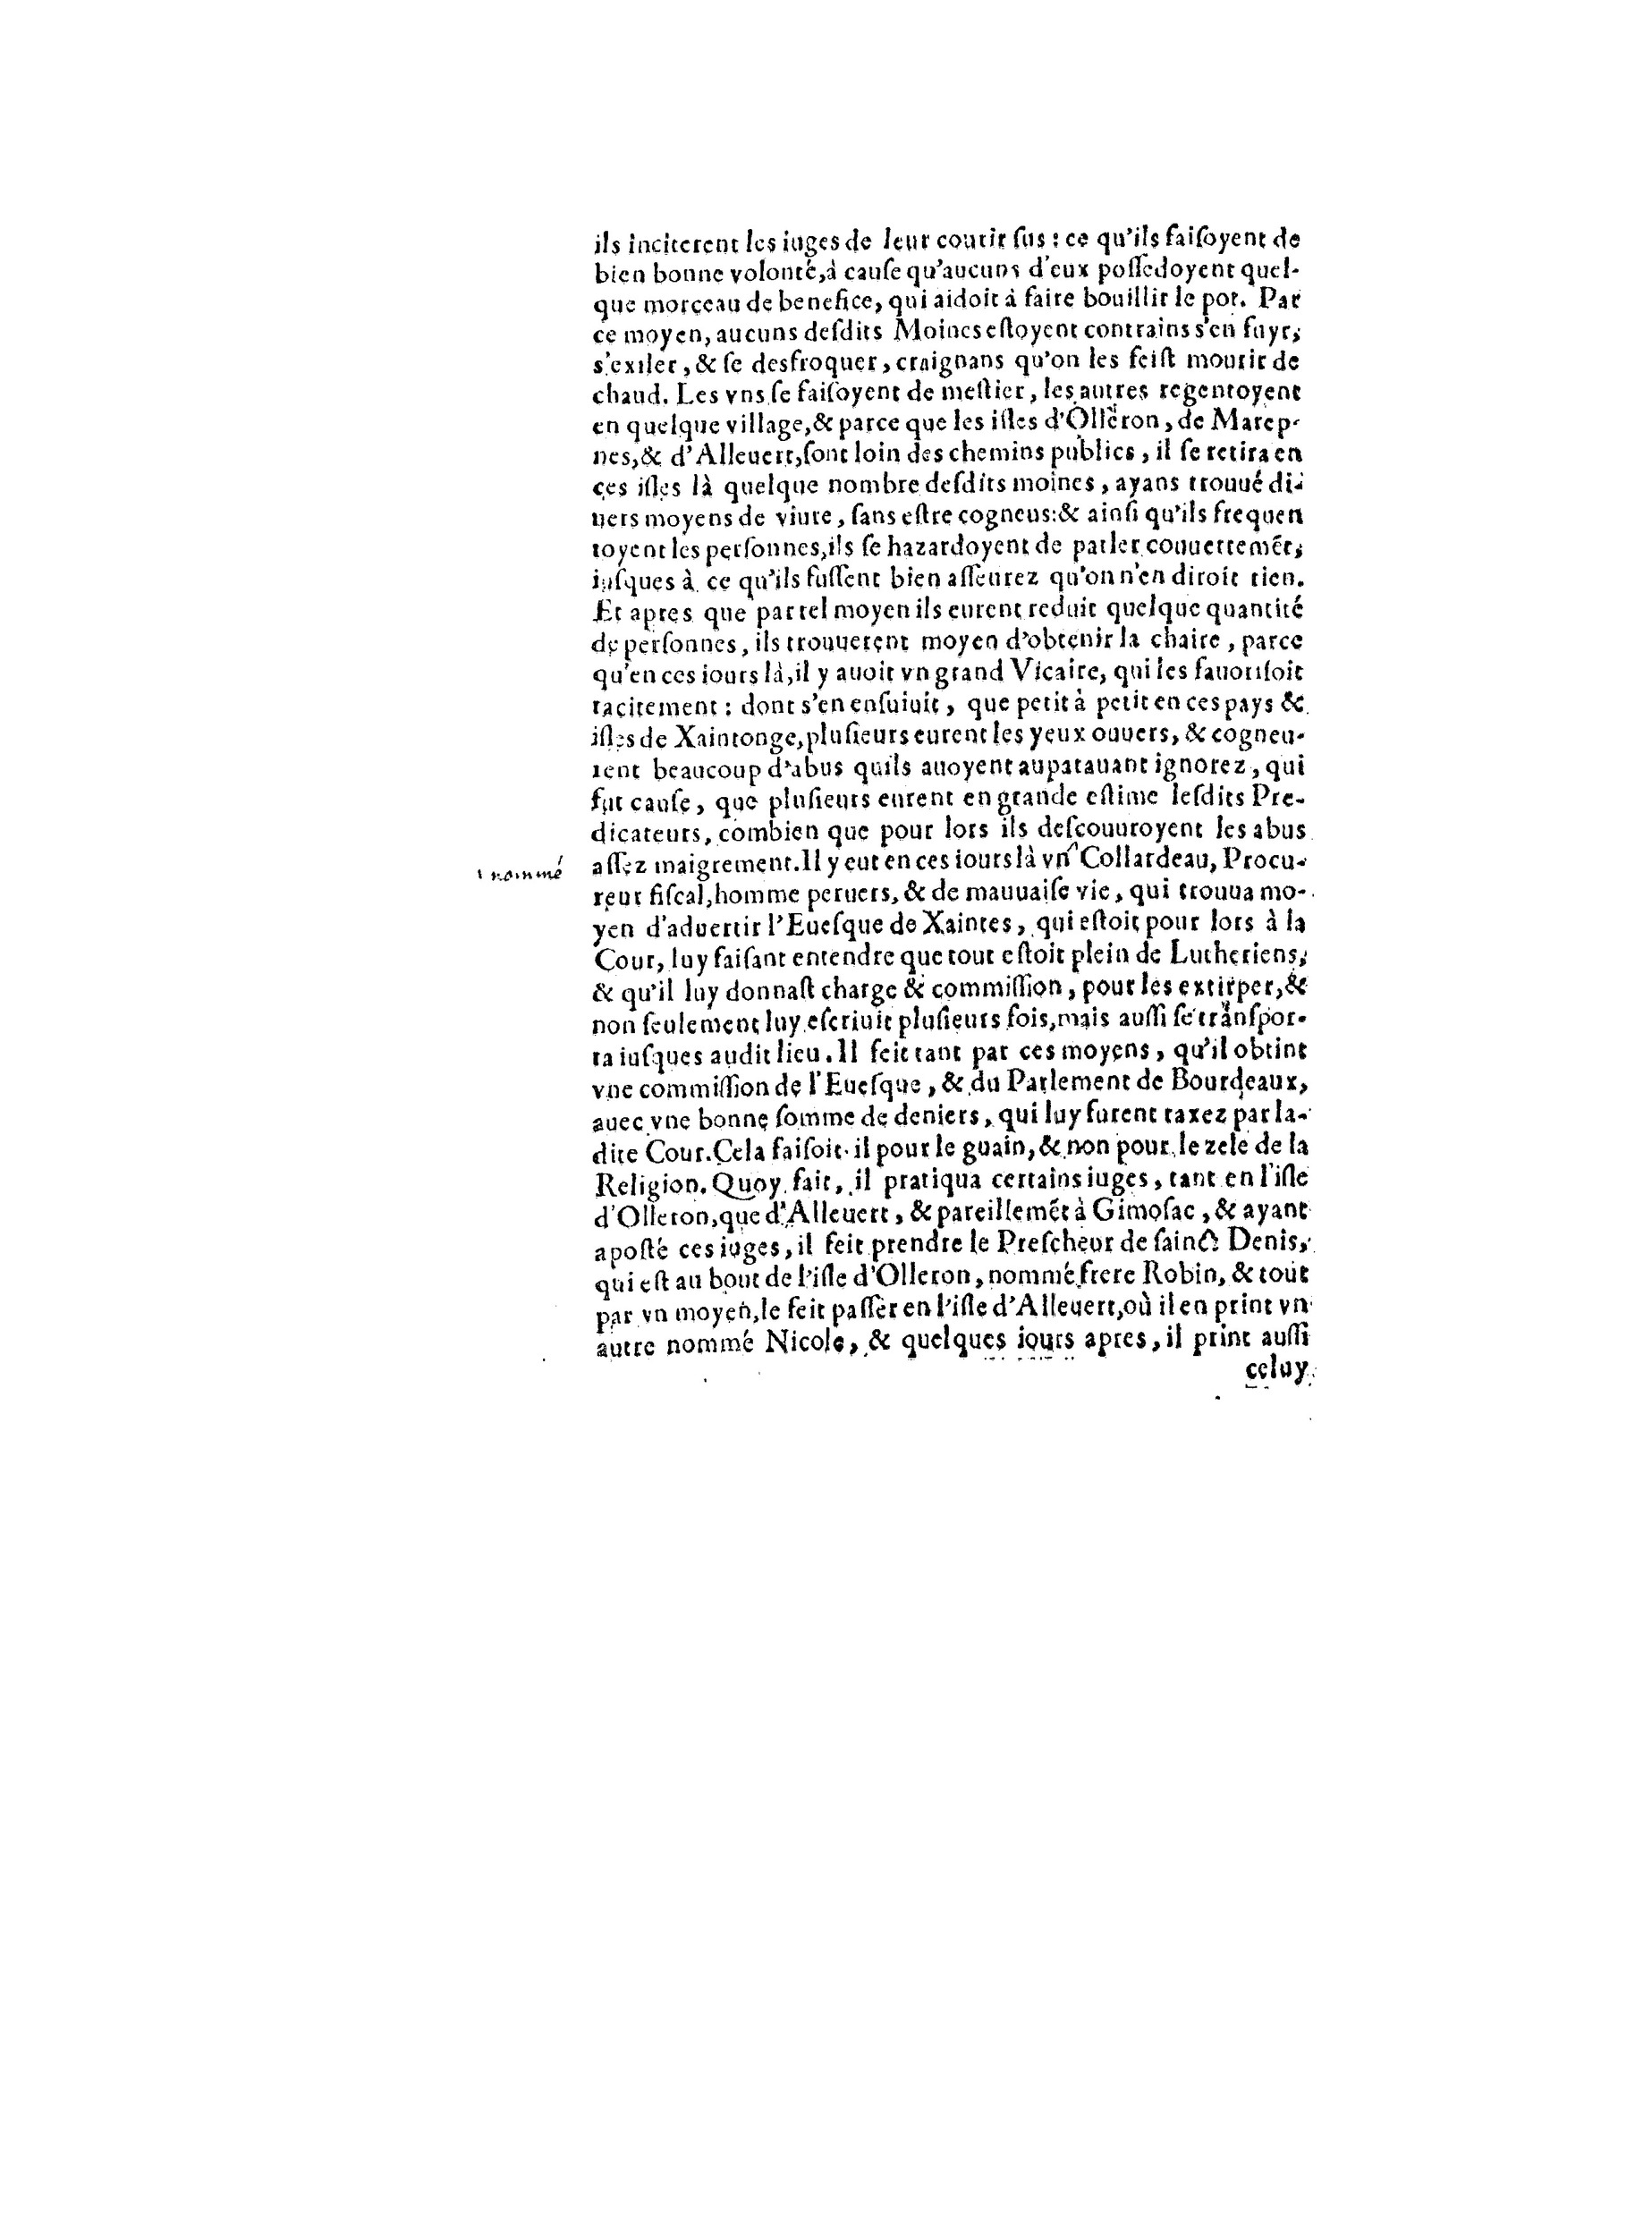 1563 Recepte veritable Berton_BNF_Page_107.jpg